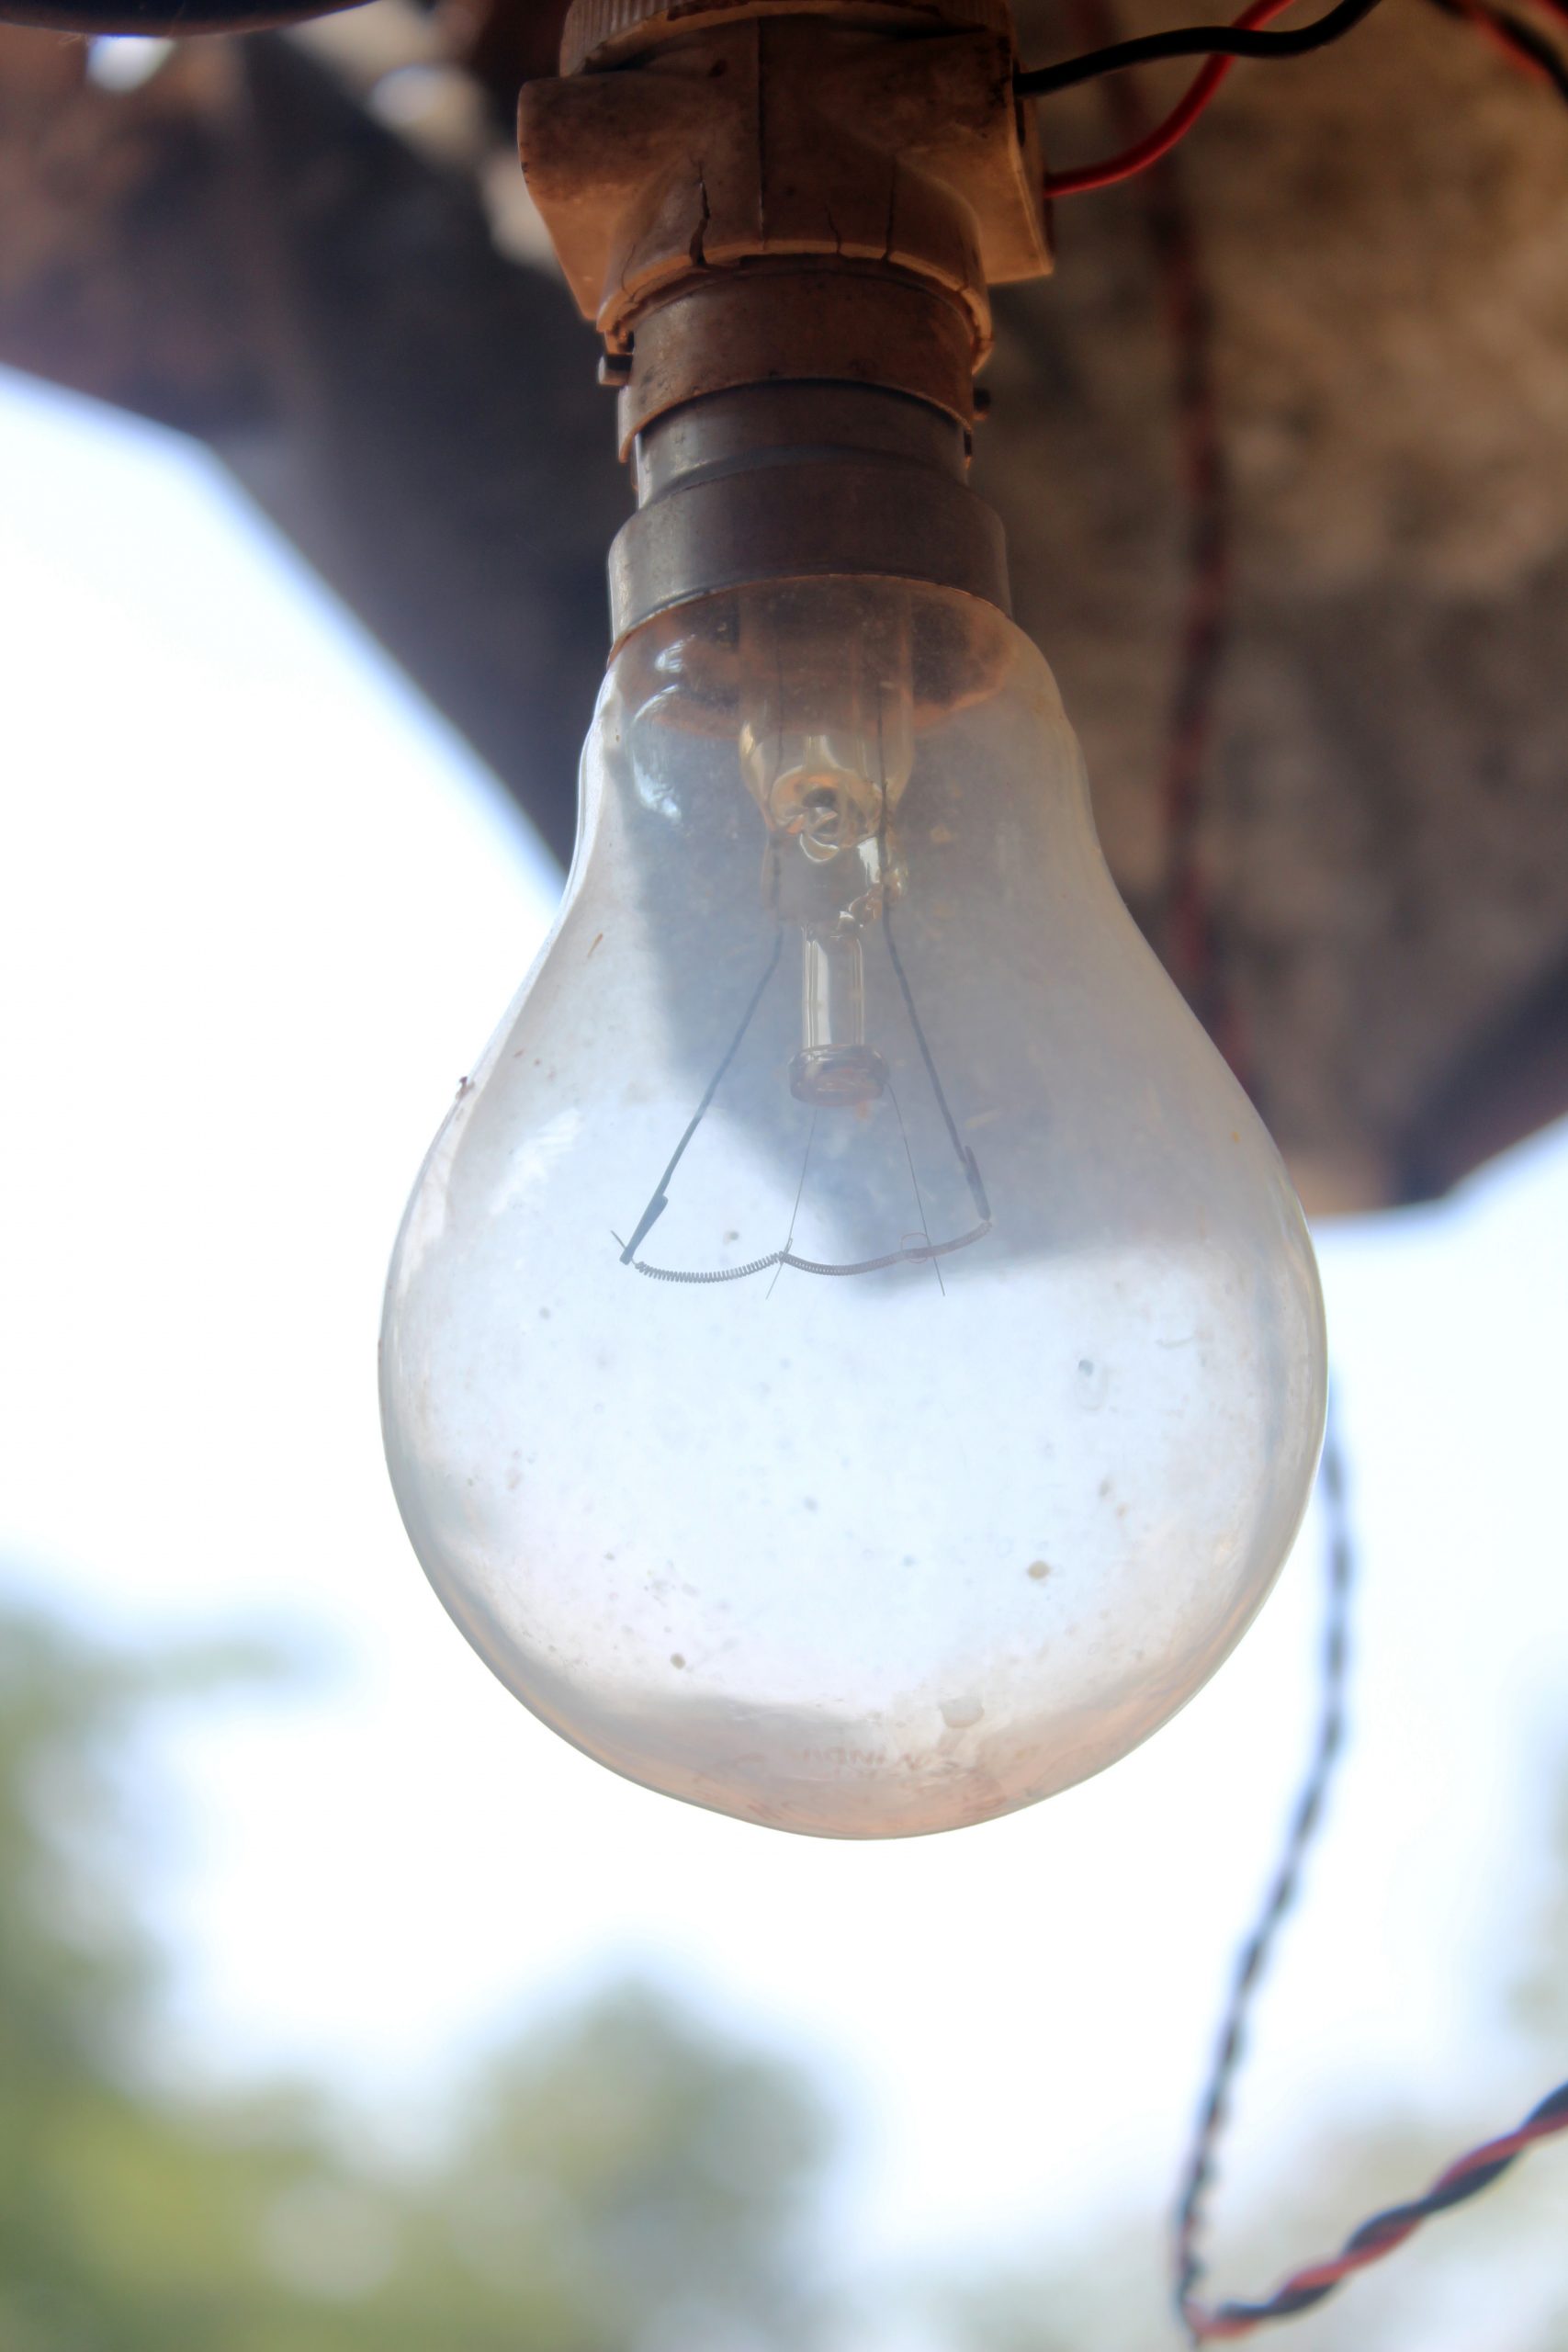 Innovation Lightbulb in a village